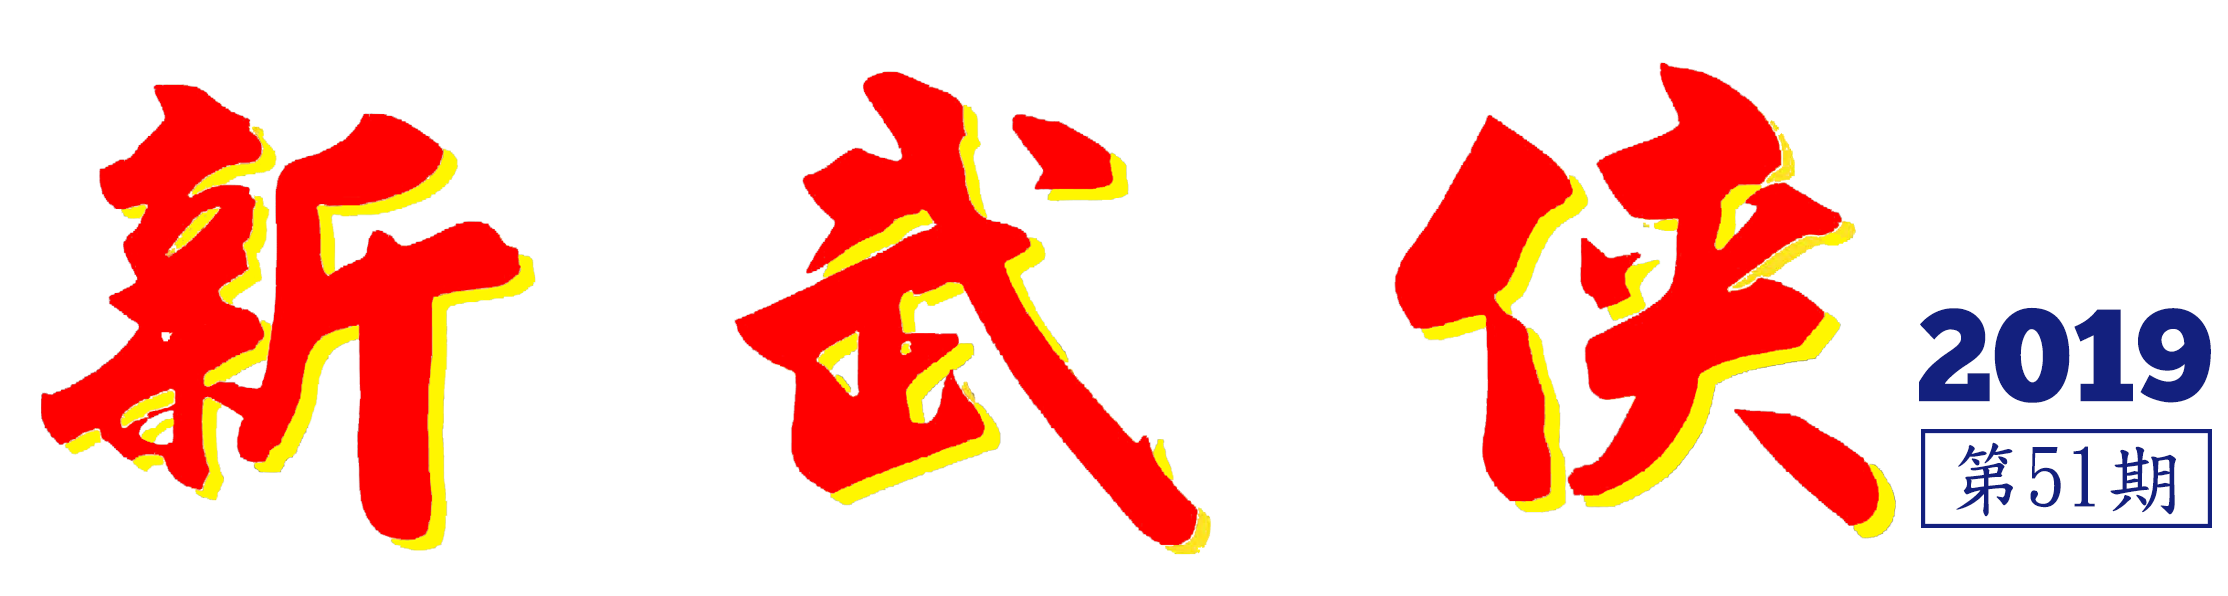 新武俠51期Logo